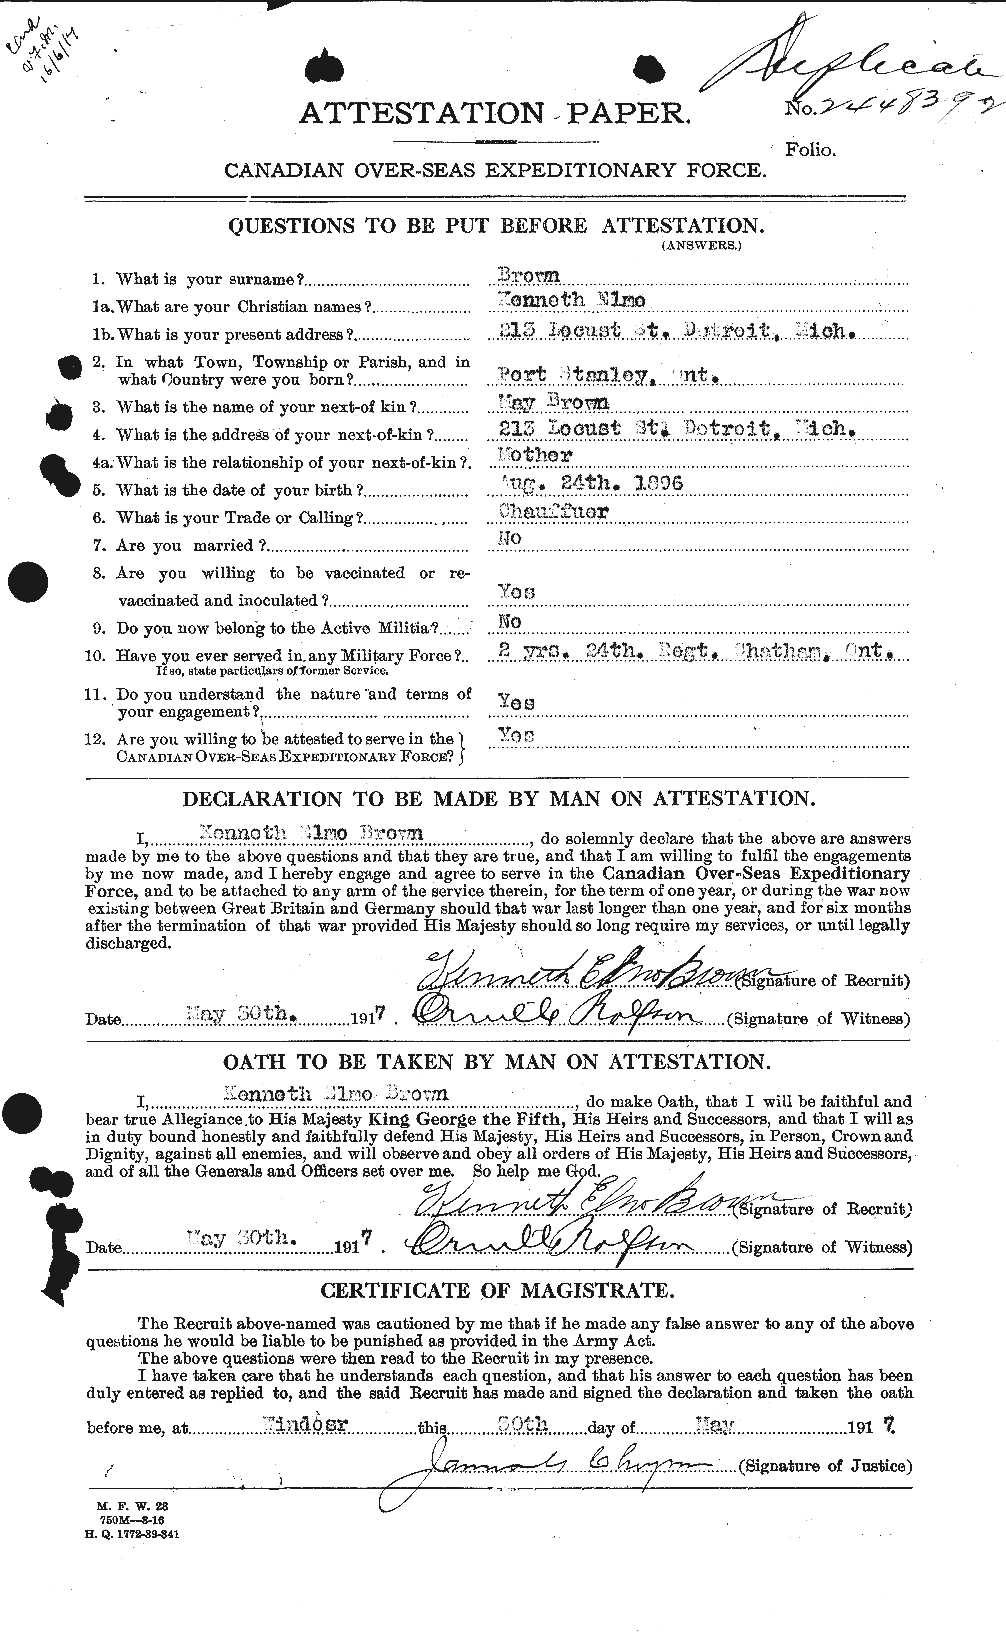 Dossiers du Personnel de la Première Guerre mondiale - CEC 266247a